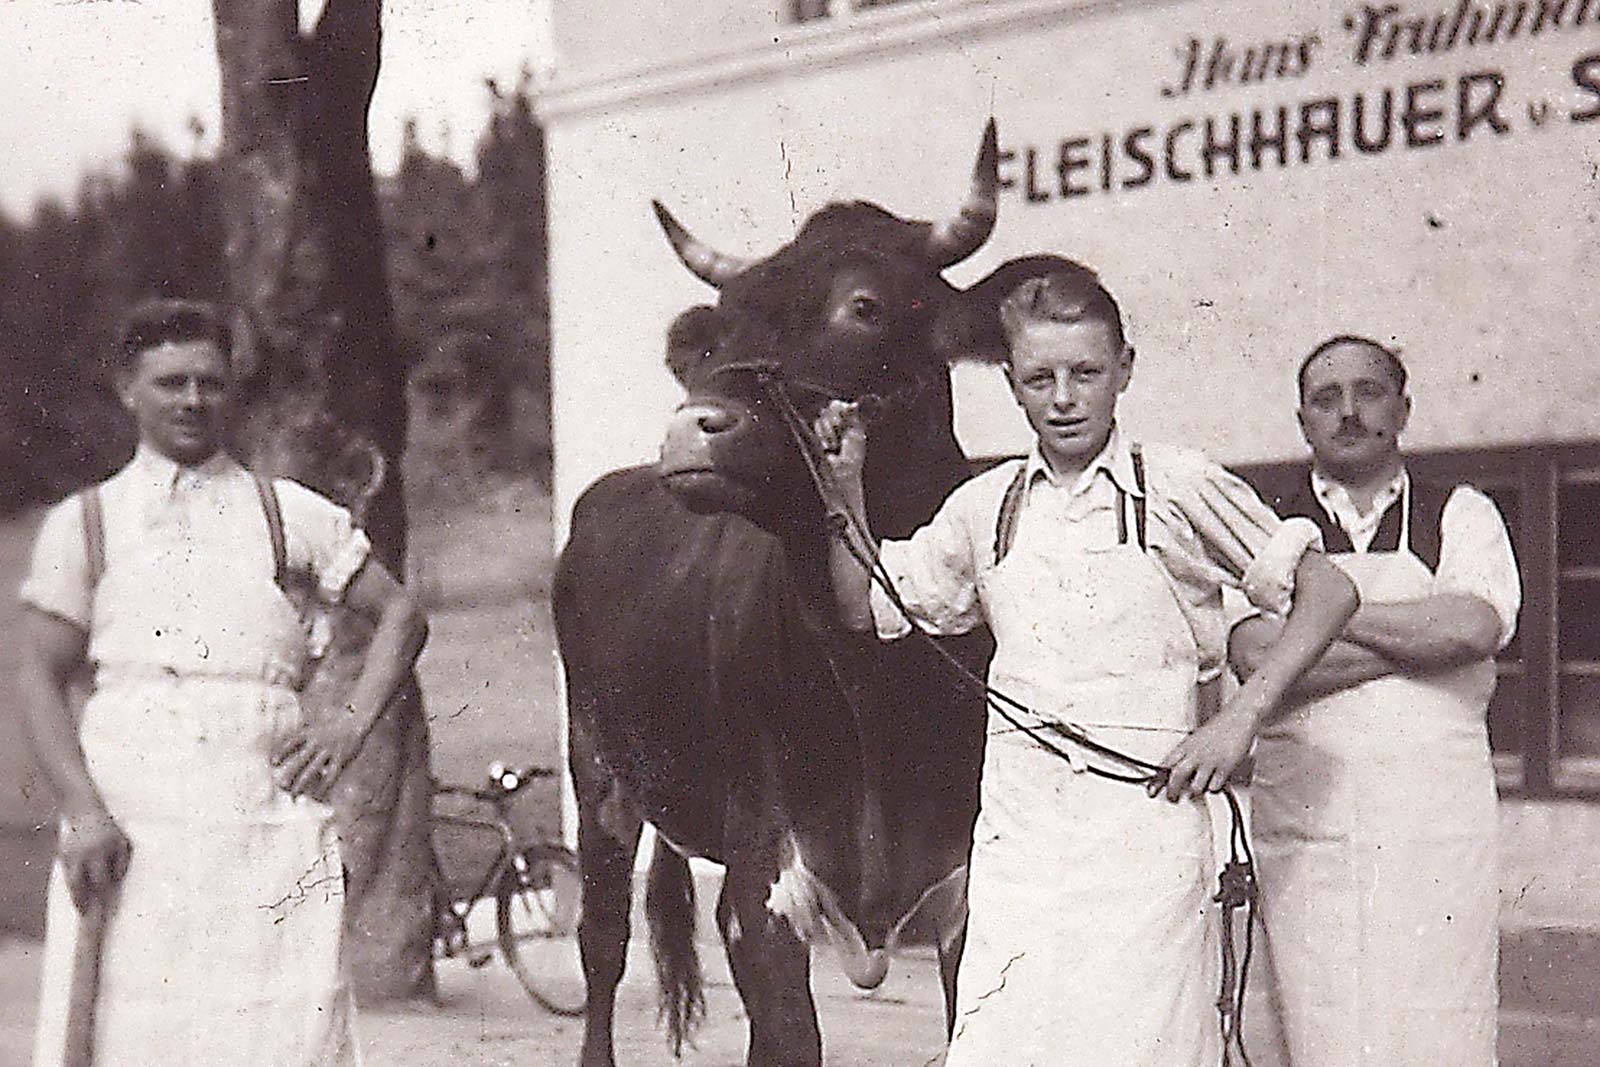 Altes Foto von Fleichermeister mit Gesell und Kuh